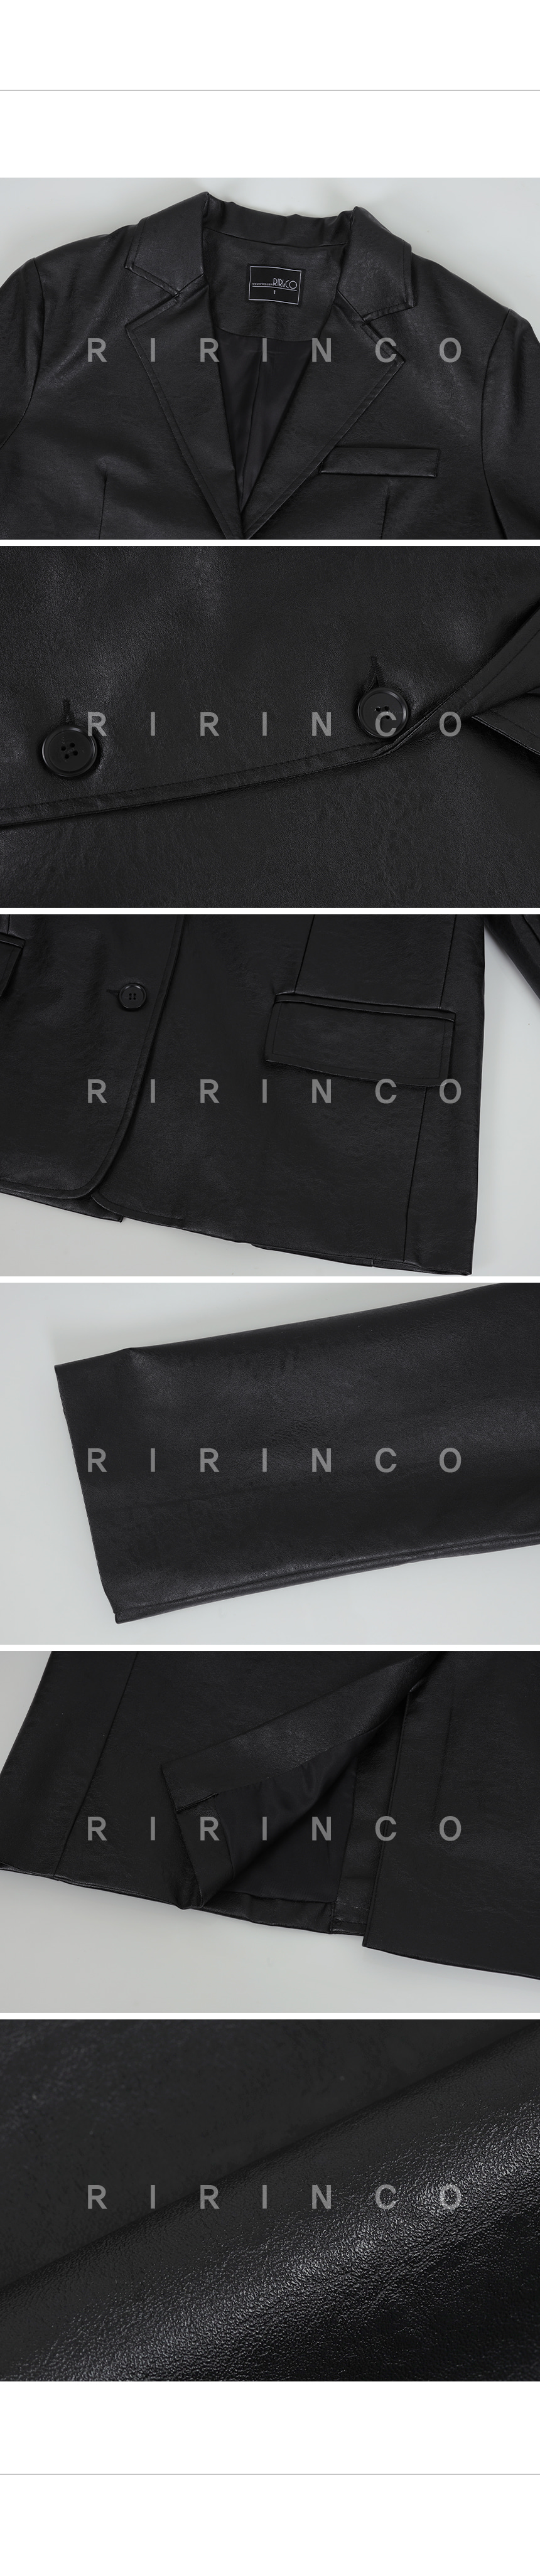 RIRINCO カラーネックレザージャケット